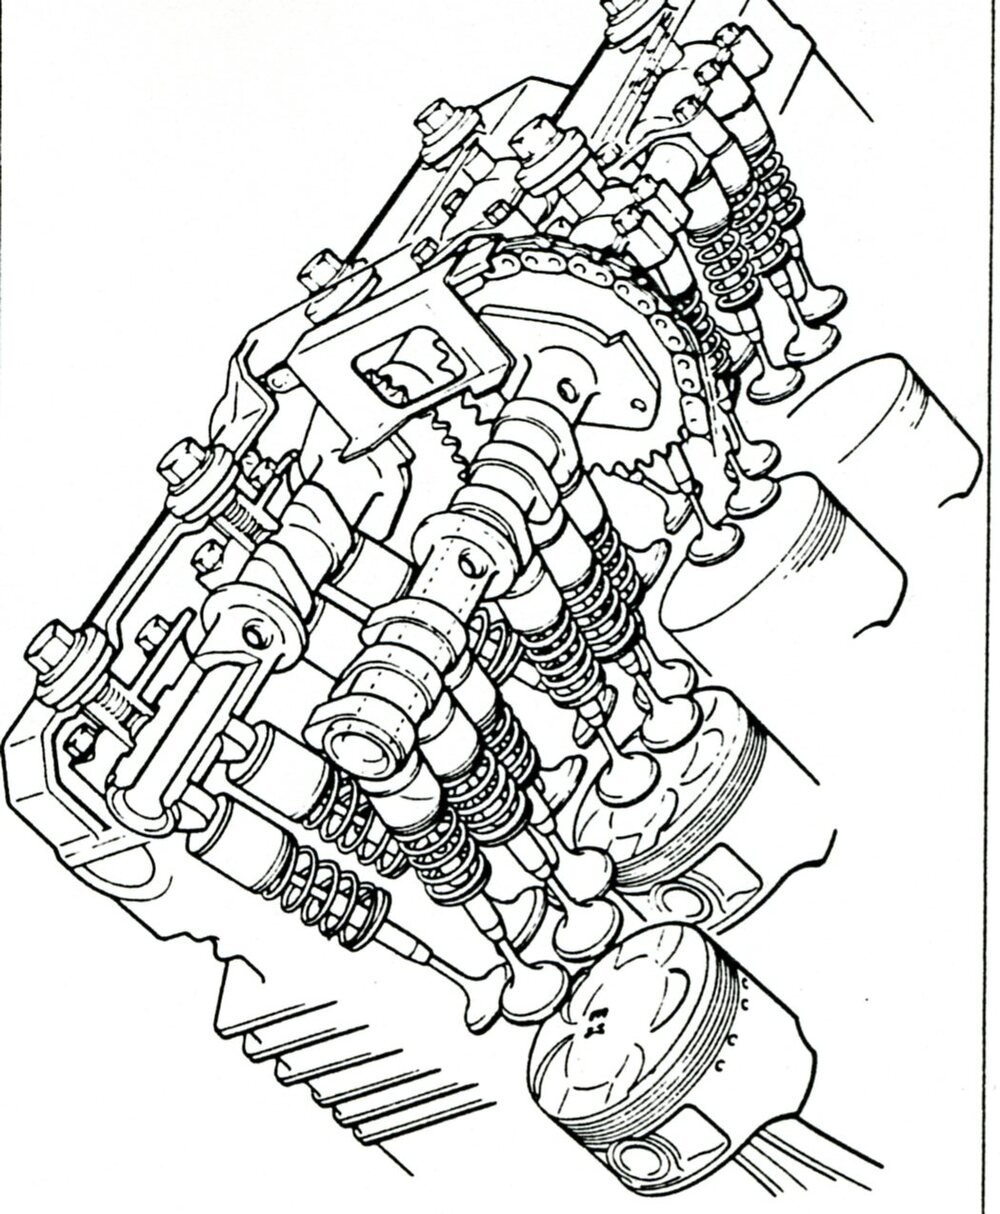 Grande sostenitrice delle cinque valvole per cilindro &egrave; stata per lungo tempo la Yamaha, che ha lanciato questa soluzione nel 1984 quando ha presentato la FZ 750